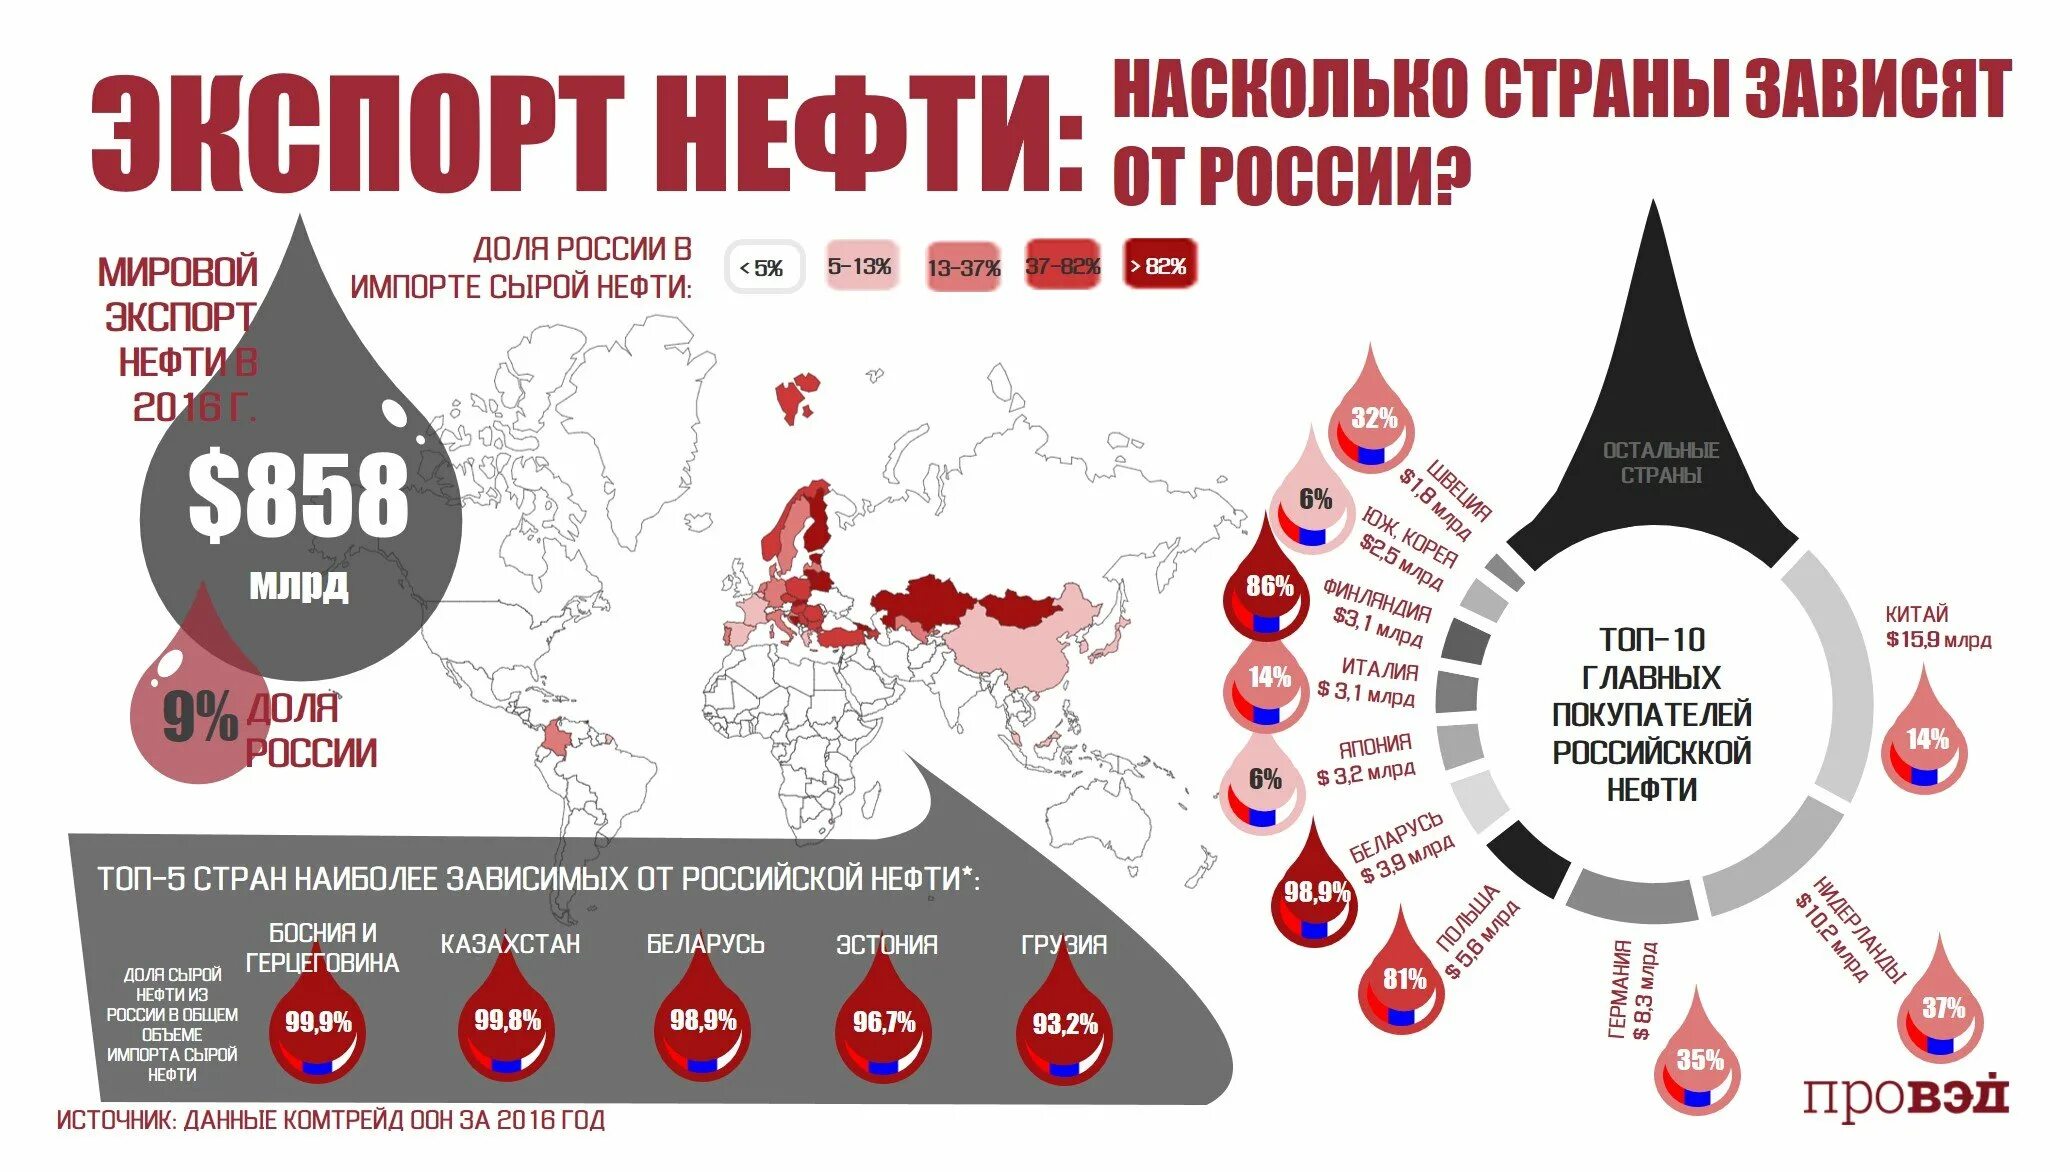 Насколько главное. Зависимость стран от Российской нефти. Куда Россия продает нефть по странам. Покупатели Российской нефти страны. Зависимость стран Европы от Российской нефти.